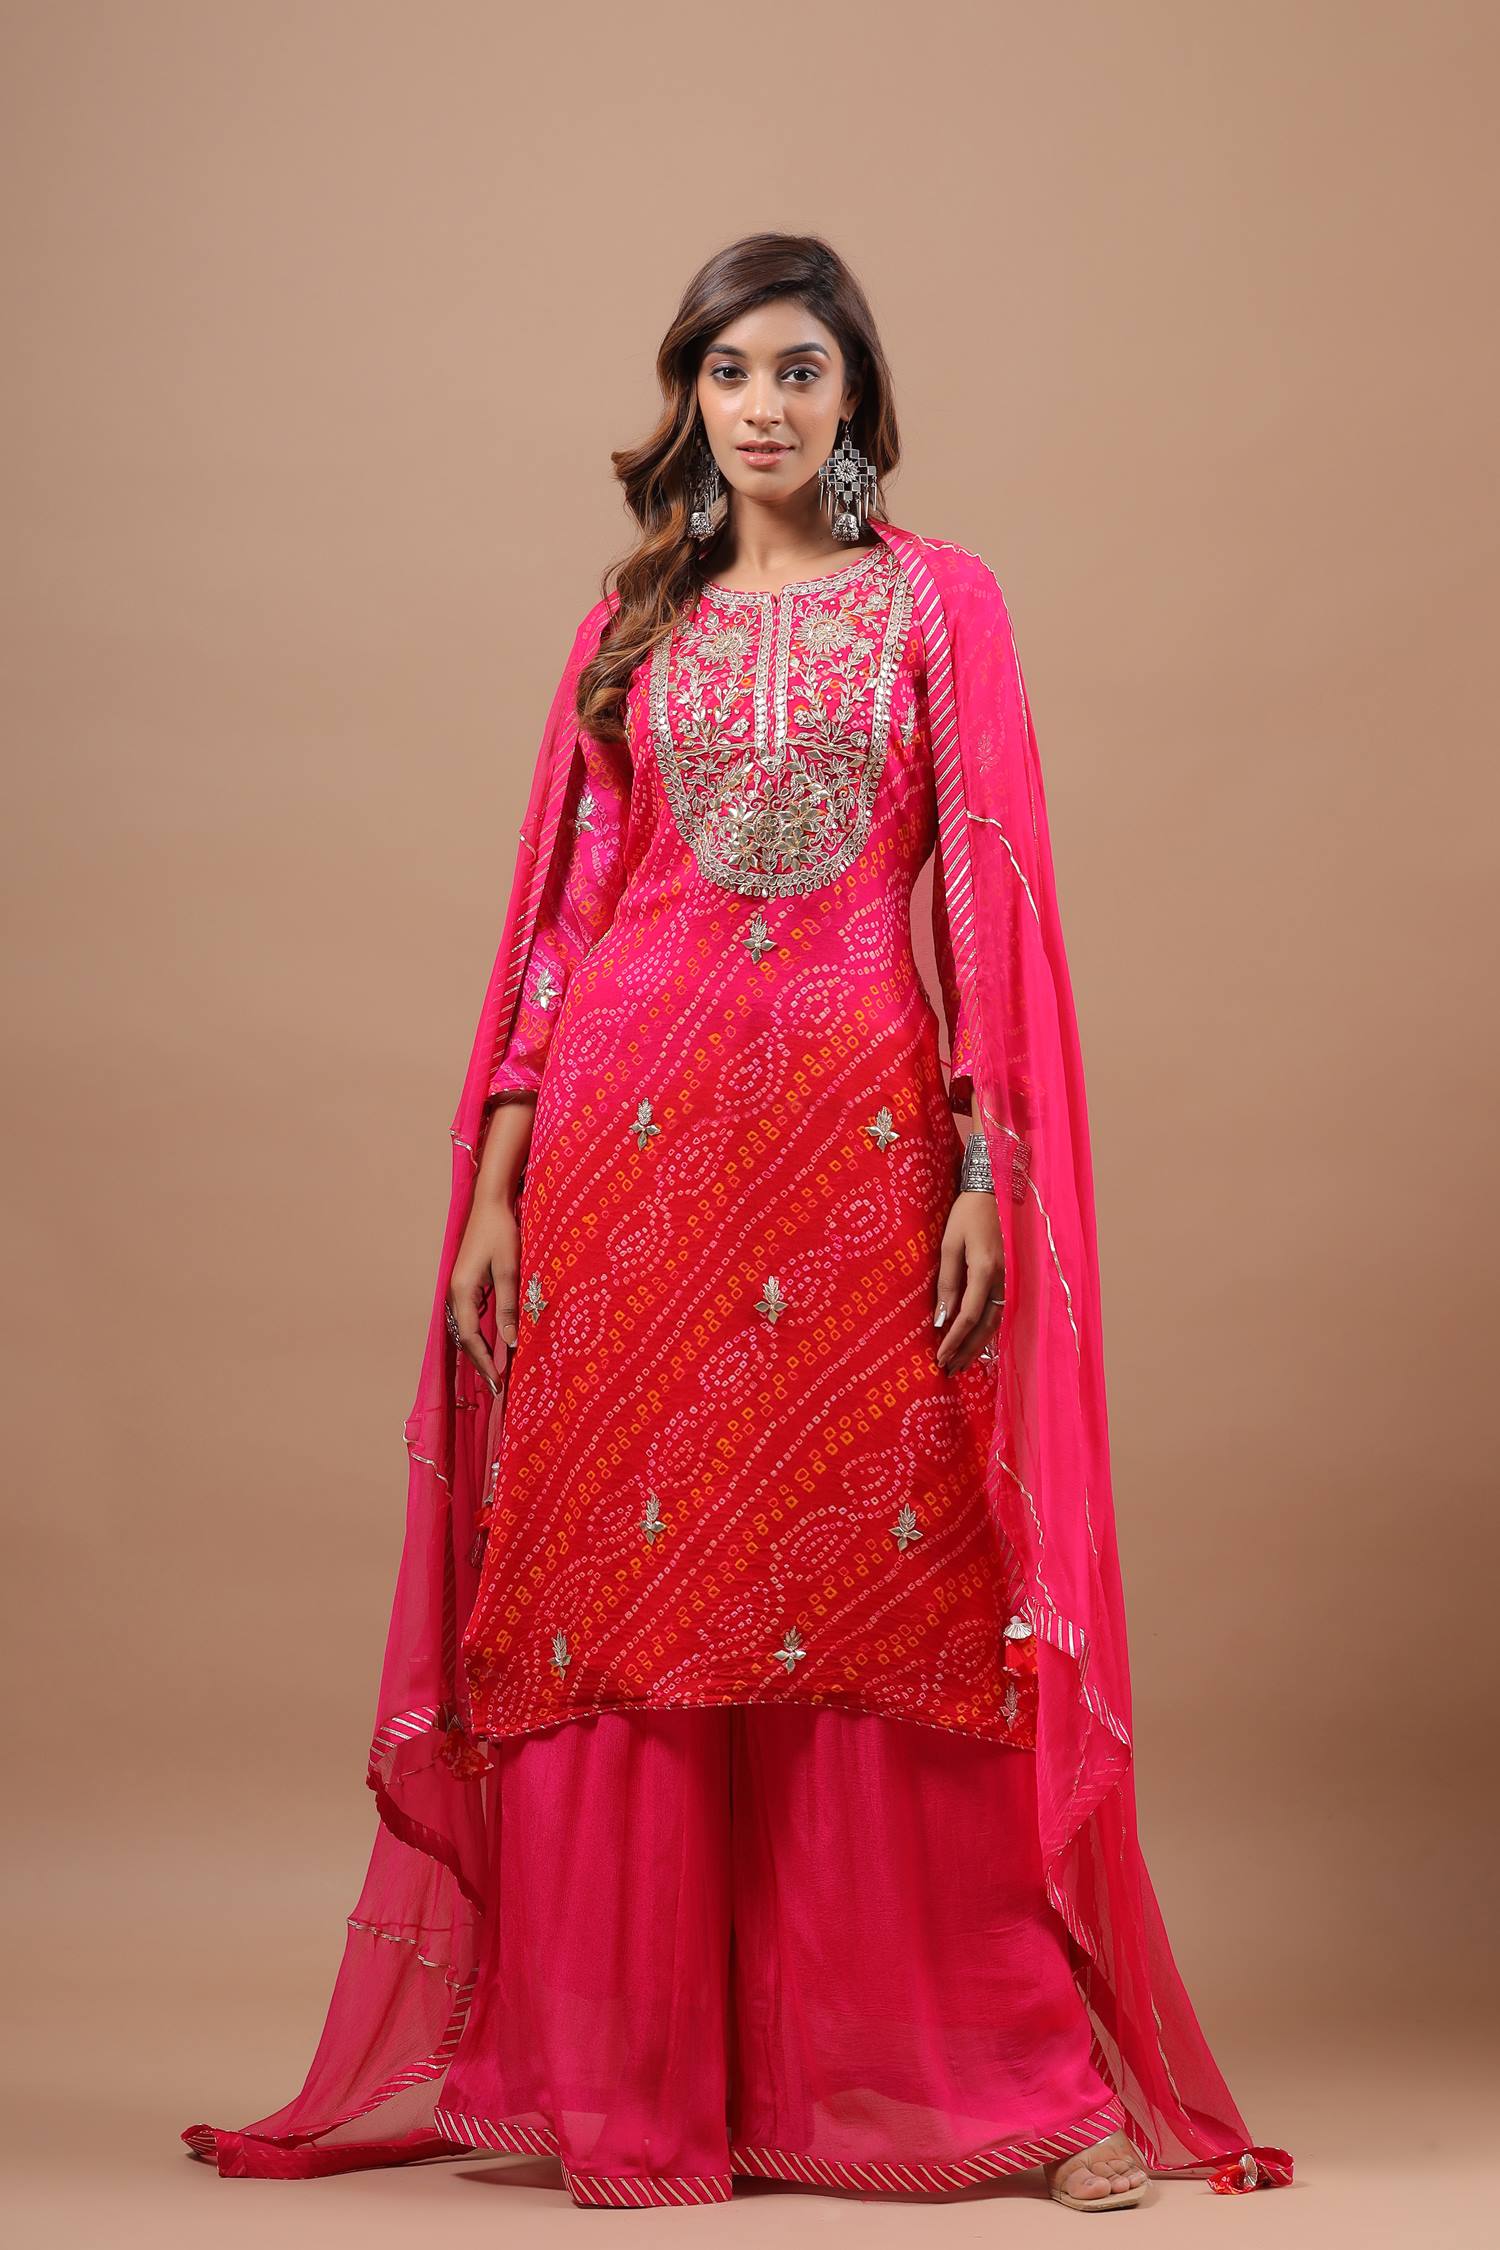 Gulto Badhej Cotton Sartin Bandhej Suit Dress Material at Rs 480/piece in  Rajkot